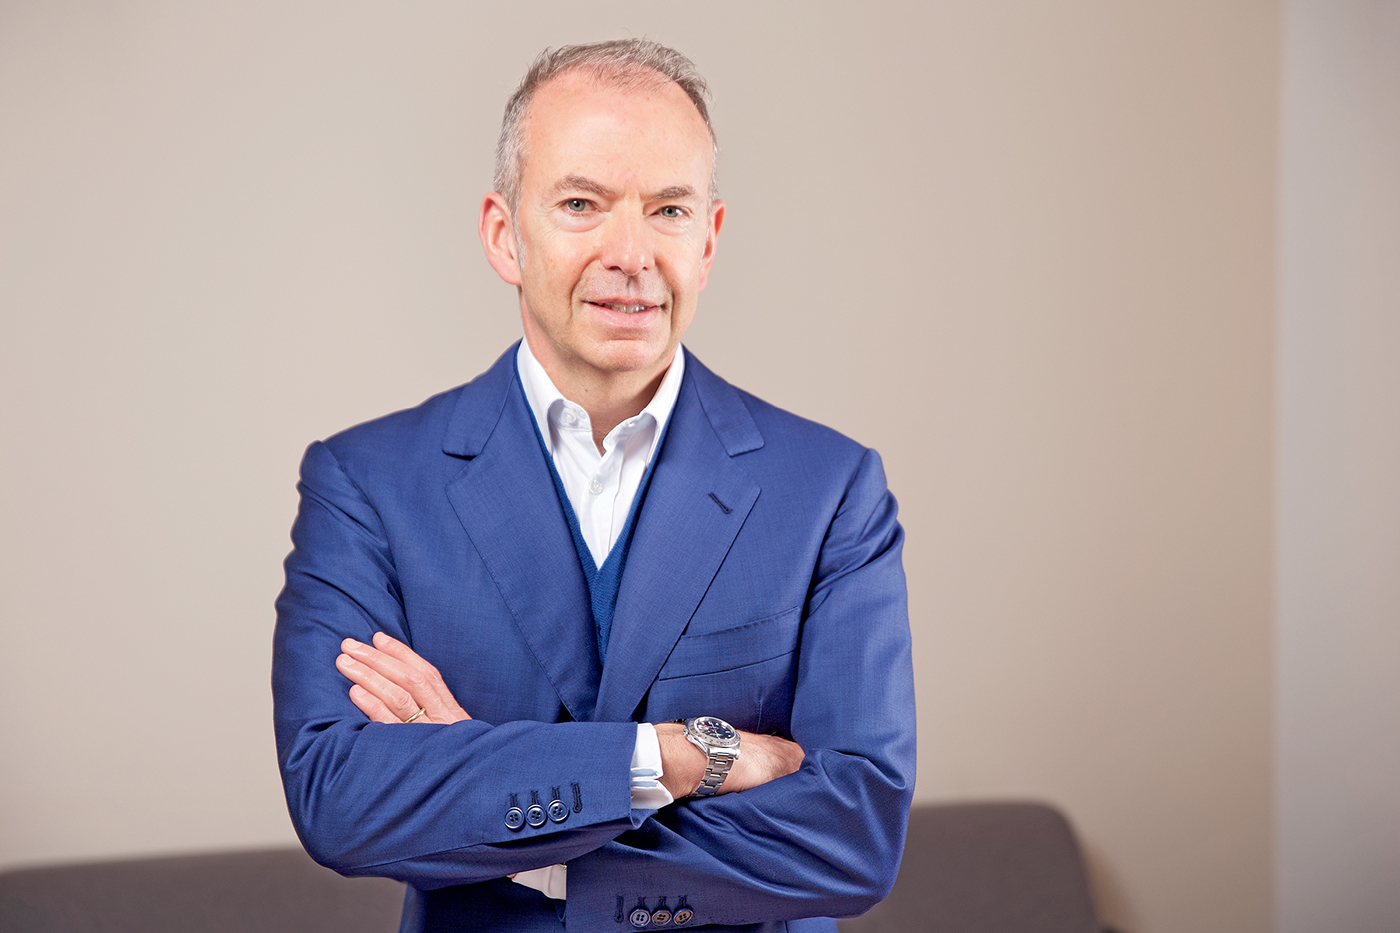 Giuseppe Casareto, CEO of Caffitaly System